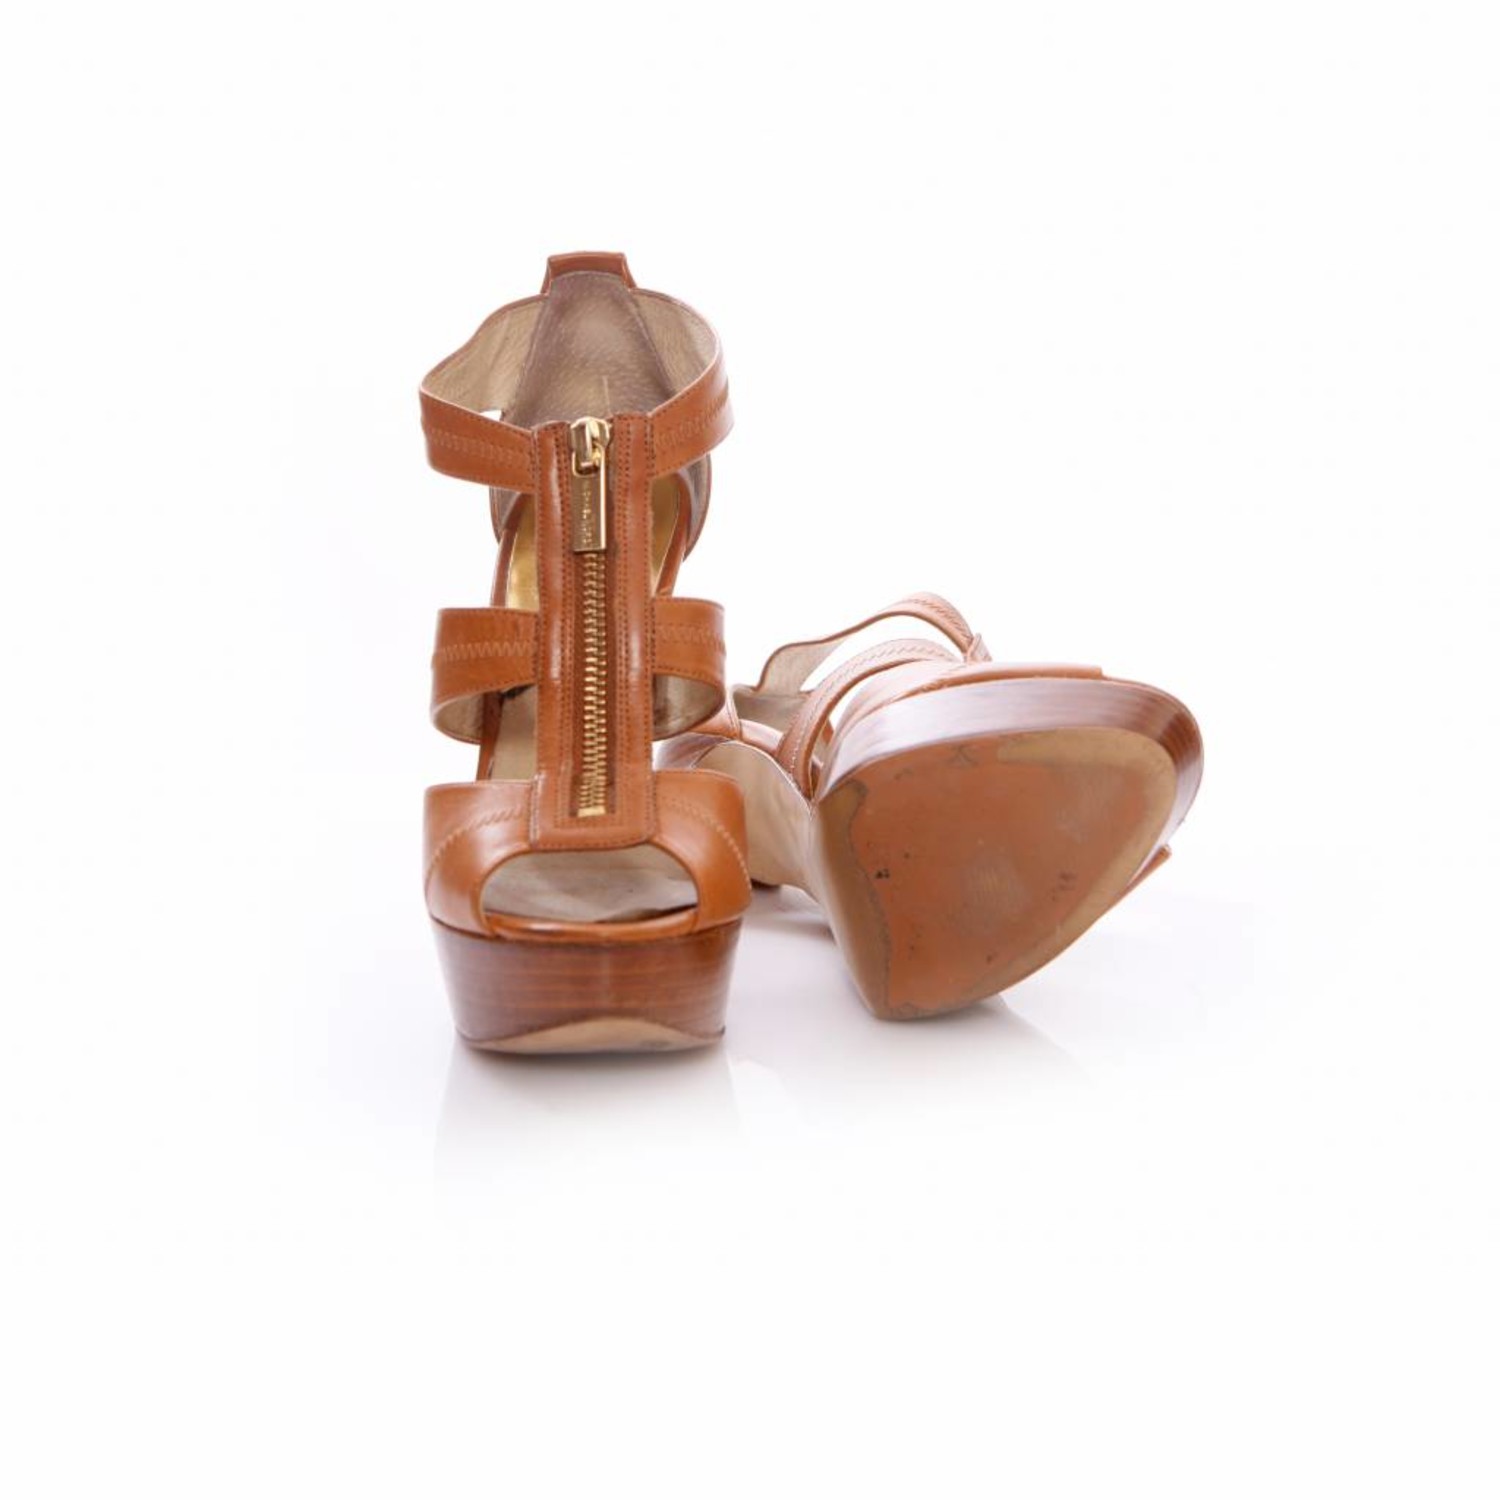 Michael Kors, brown leather platform sandals. - Unique Designer Pieces